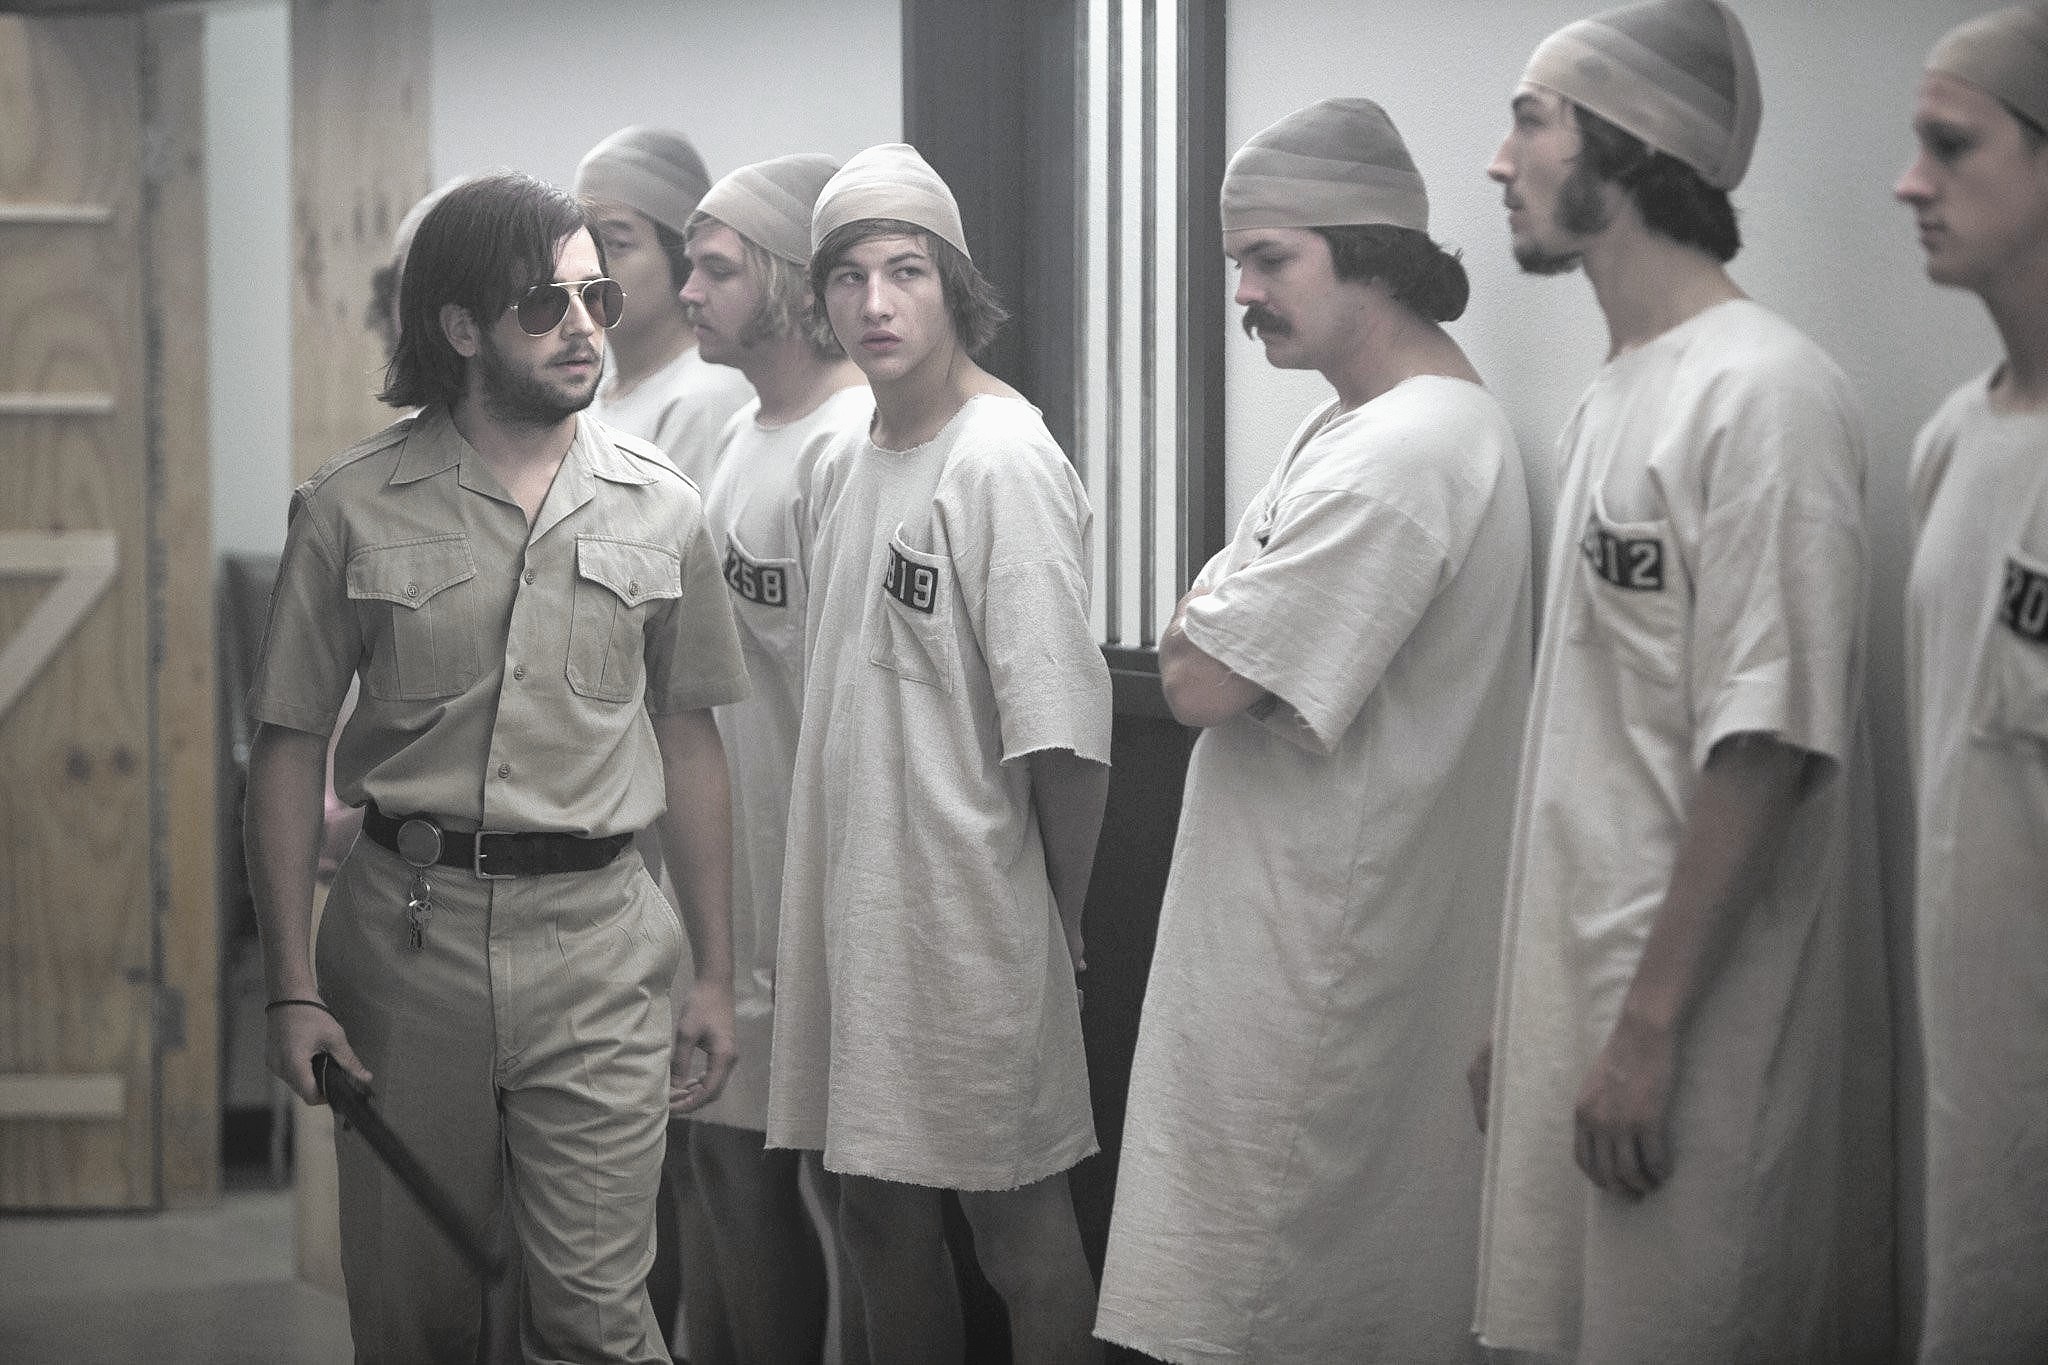 The Zimbardo Prison Experiment